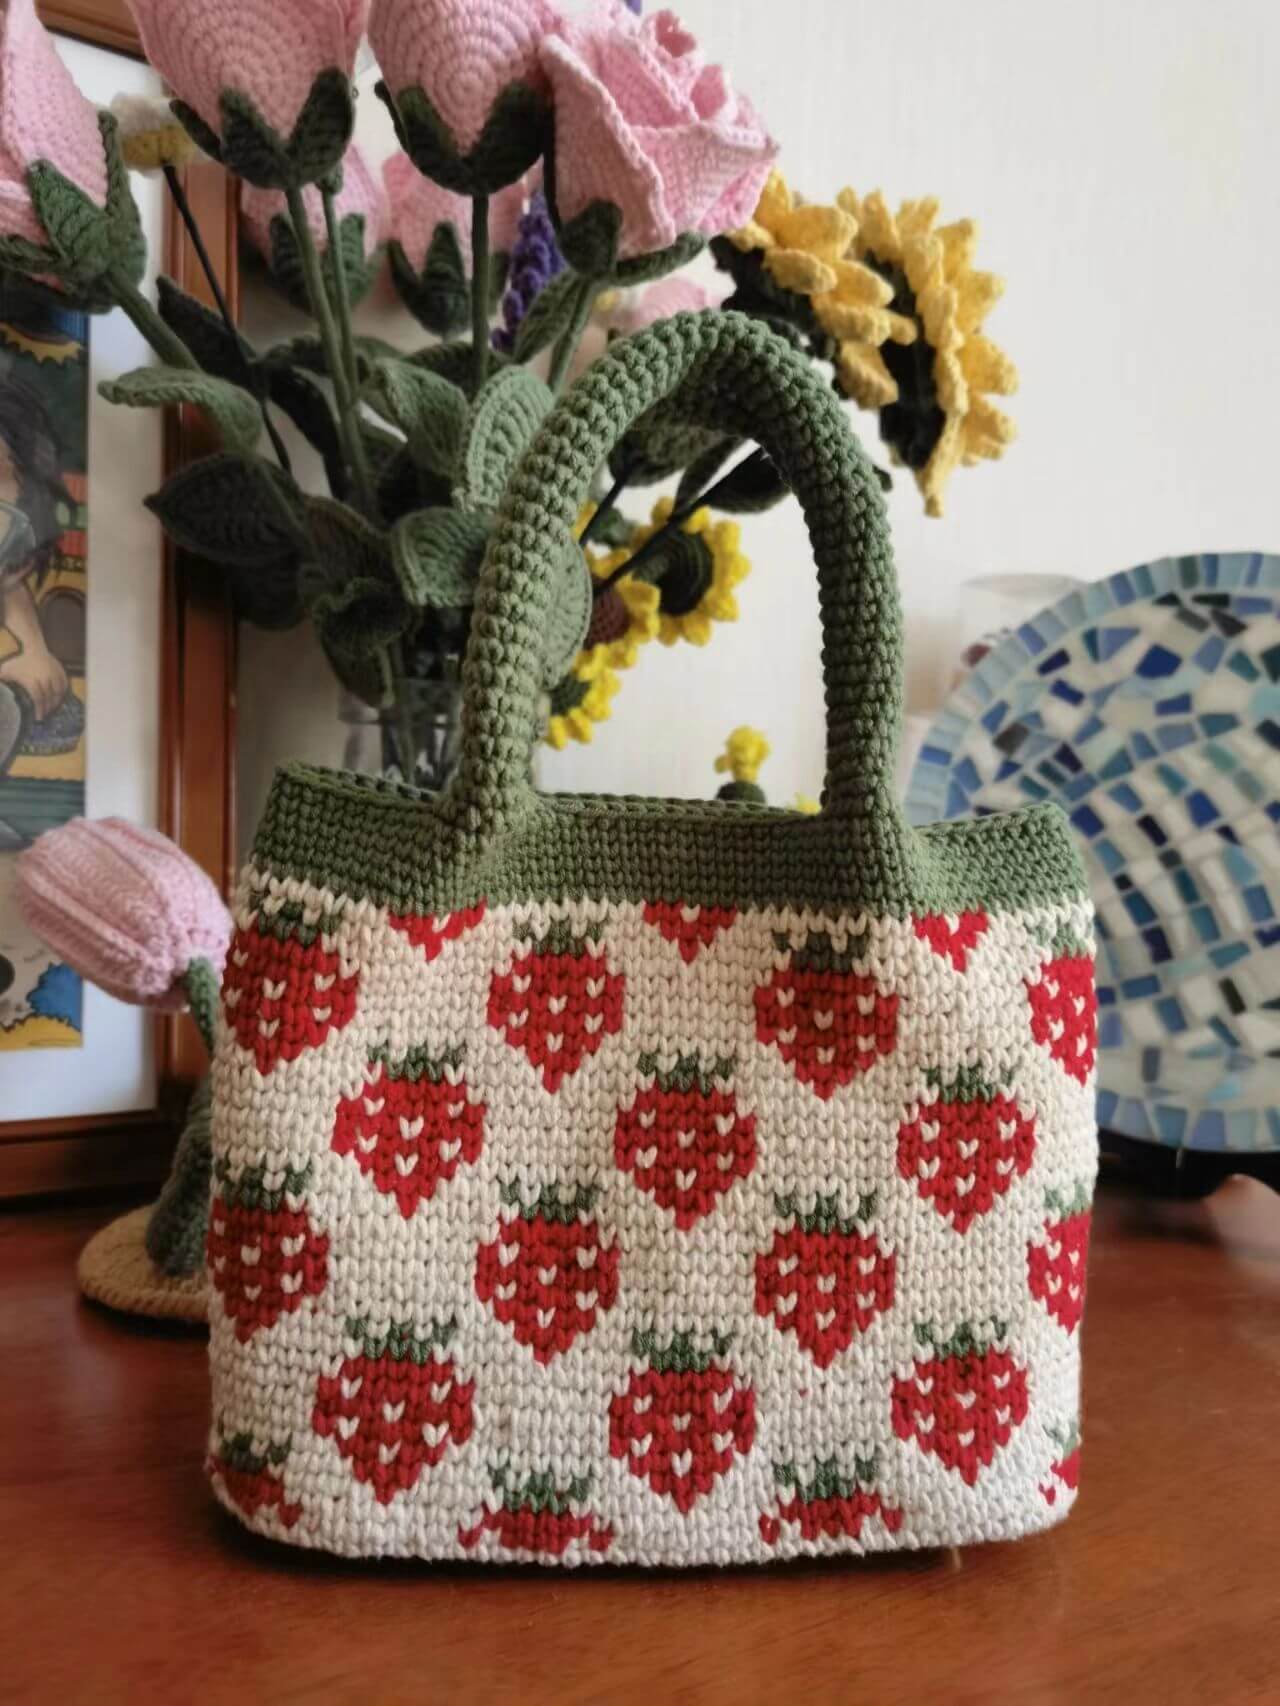 Red Heart Crochet Flower Tote Bag